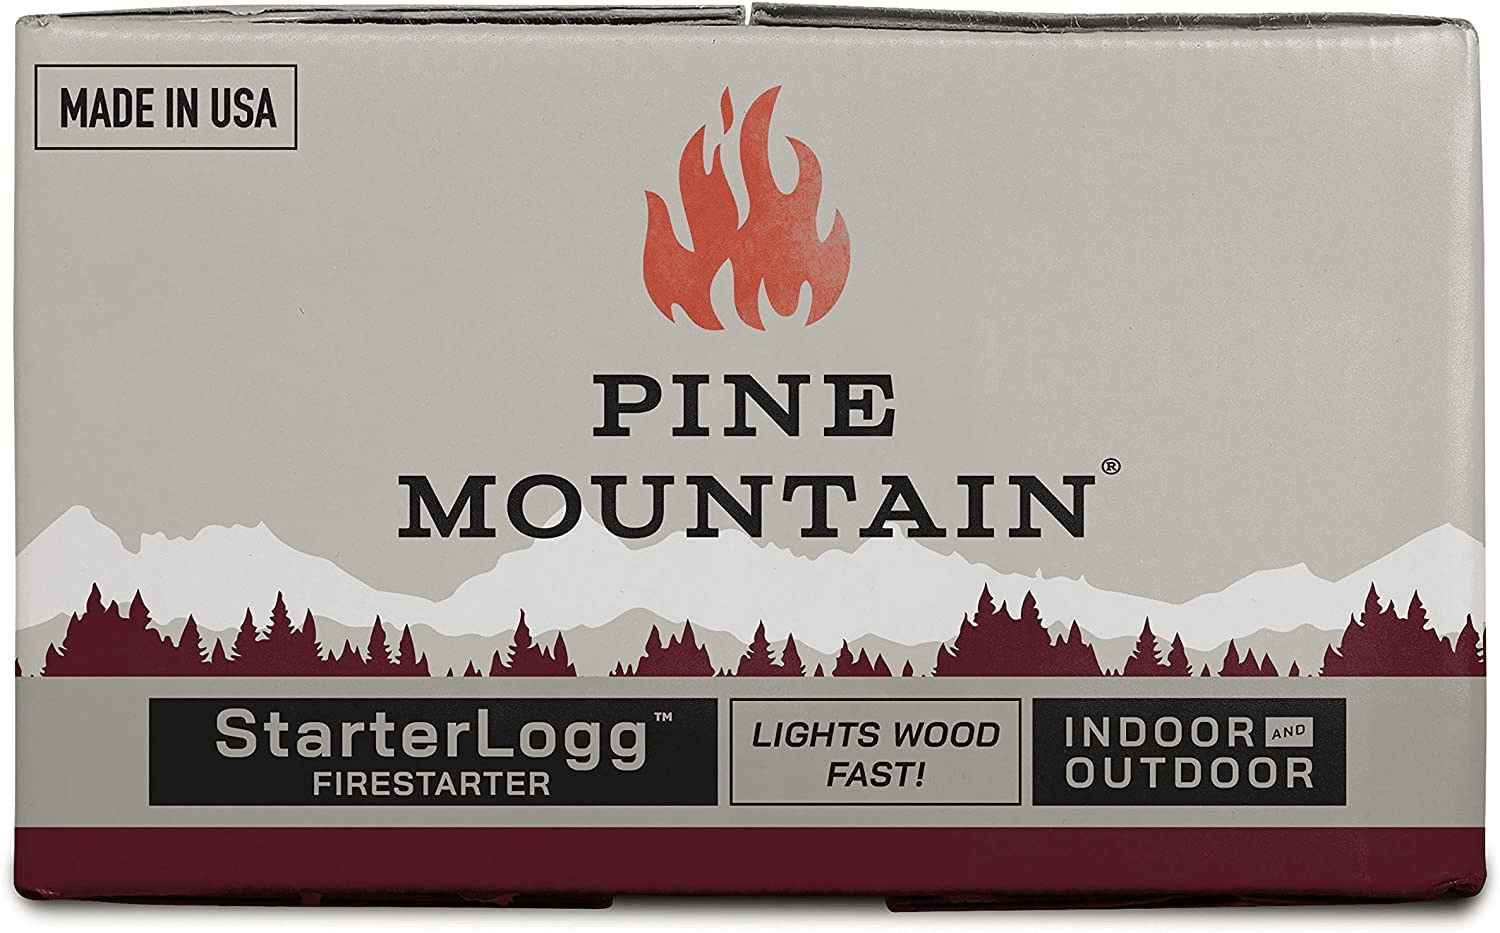 pine mountain